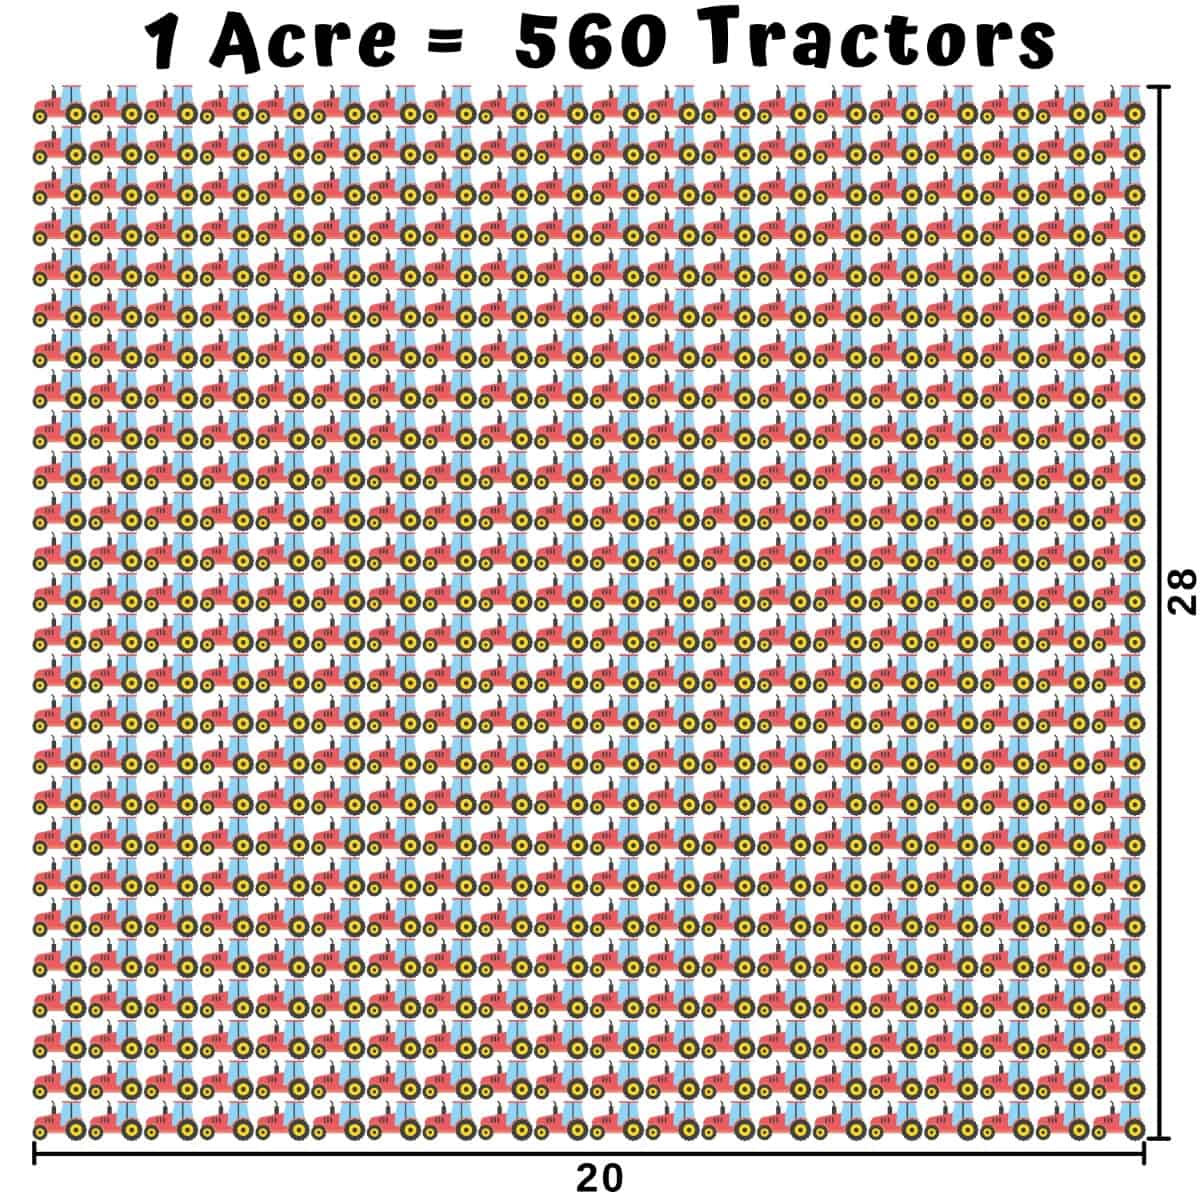  hvor stor er en Acre - Traktorer